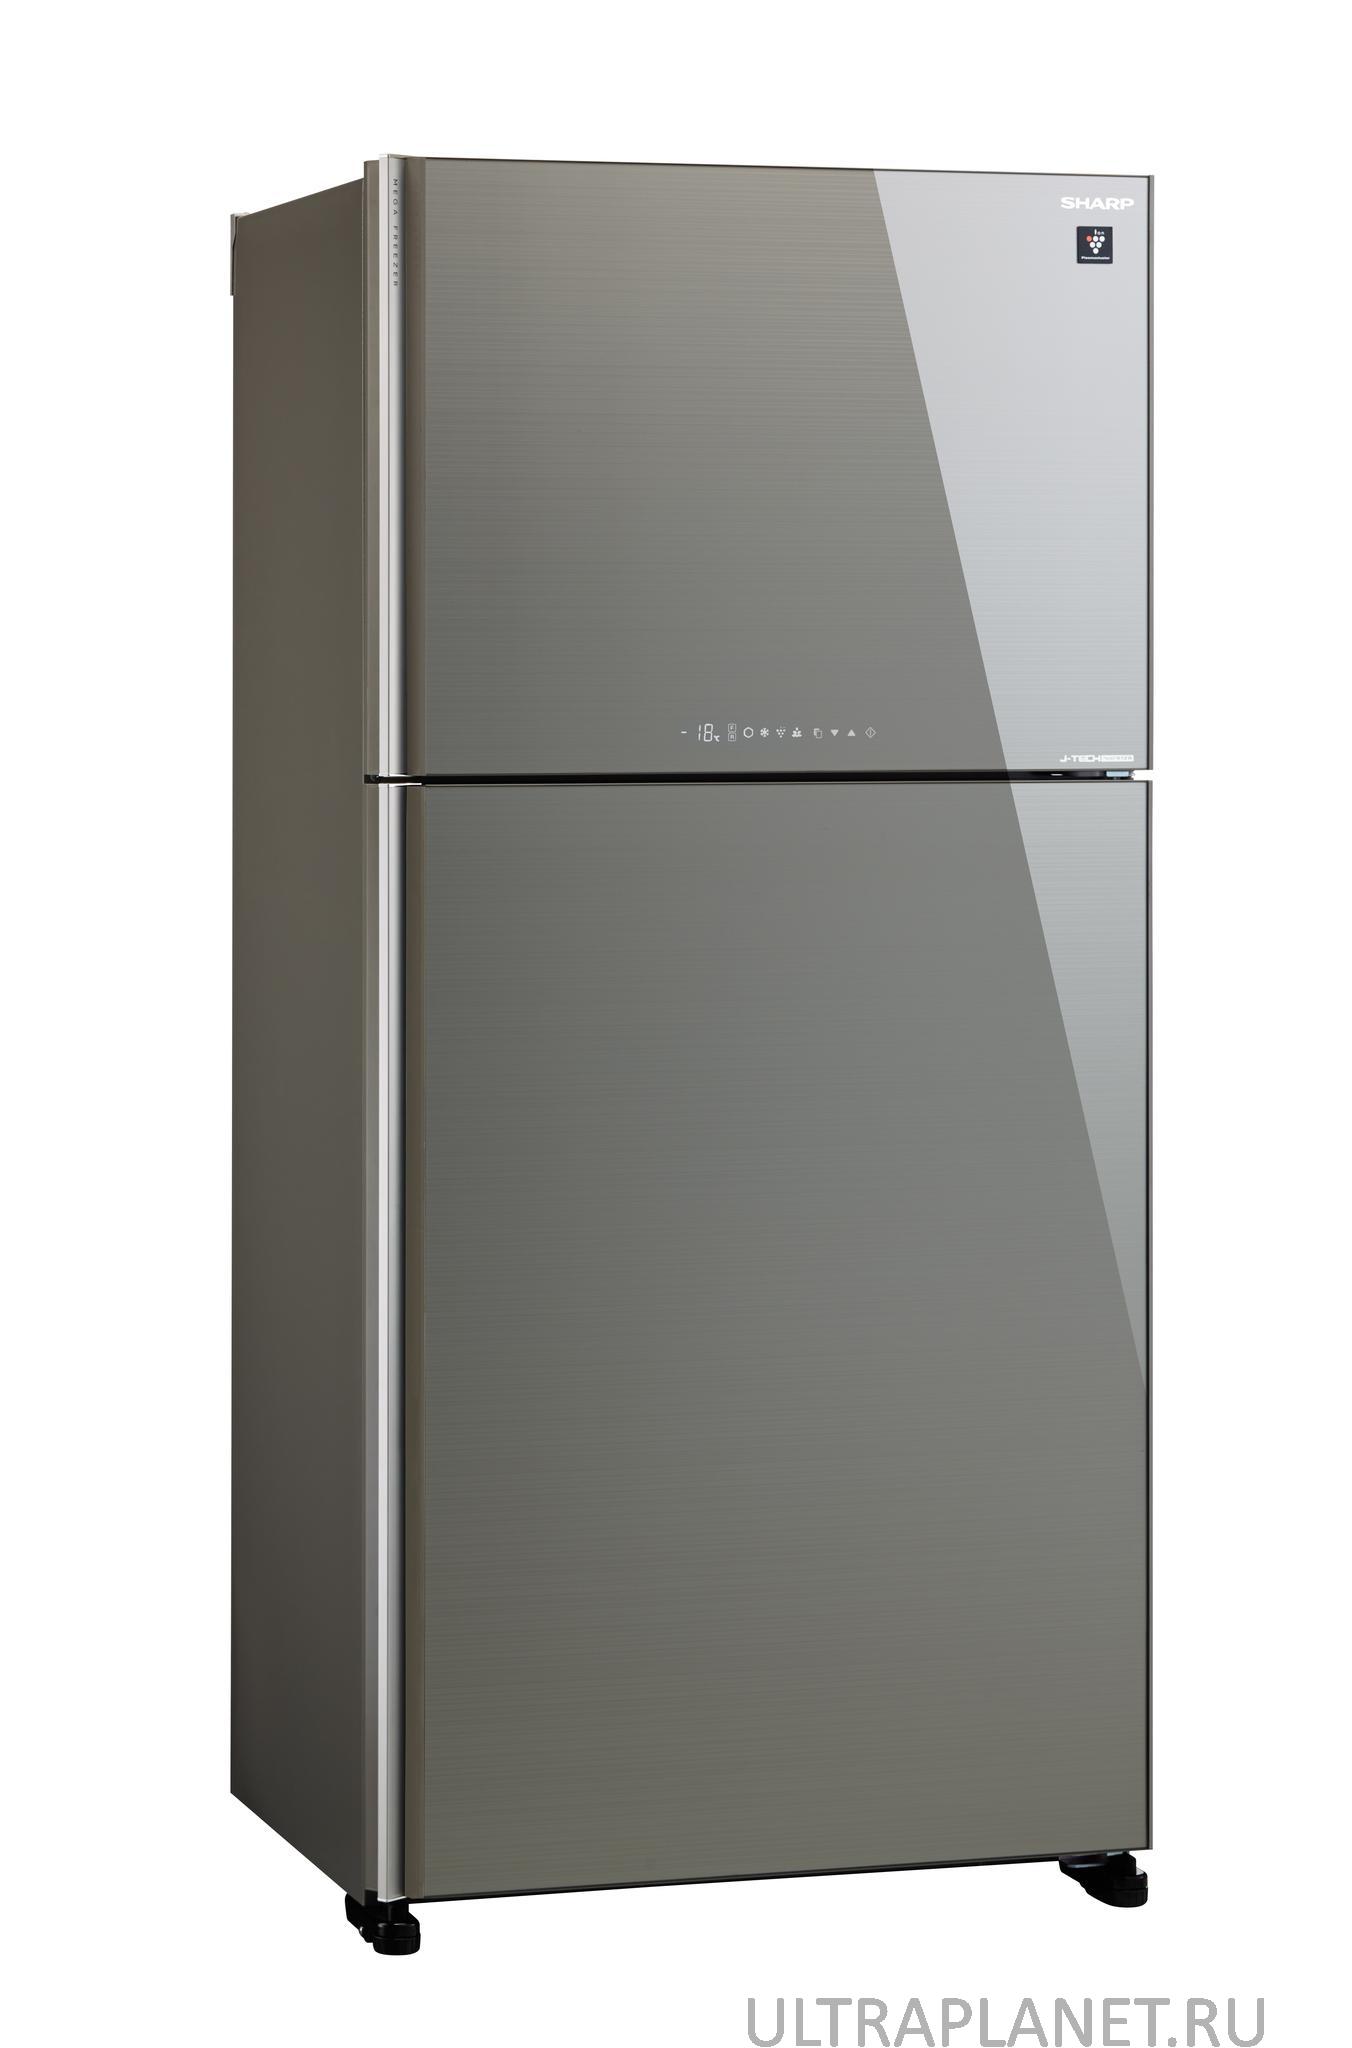 Холодильник Sharp SJ-xg60pgsl серебристый